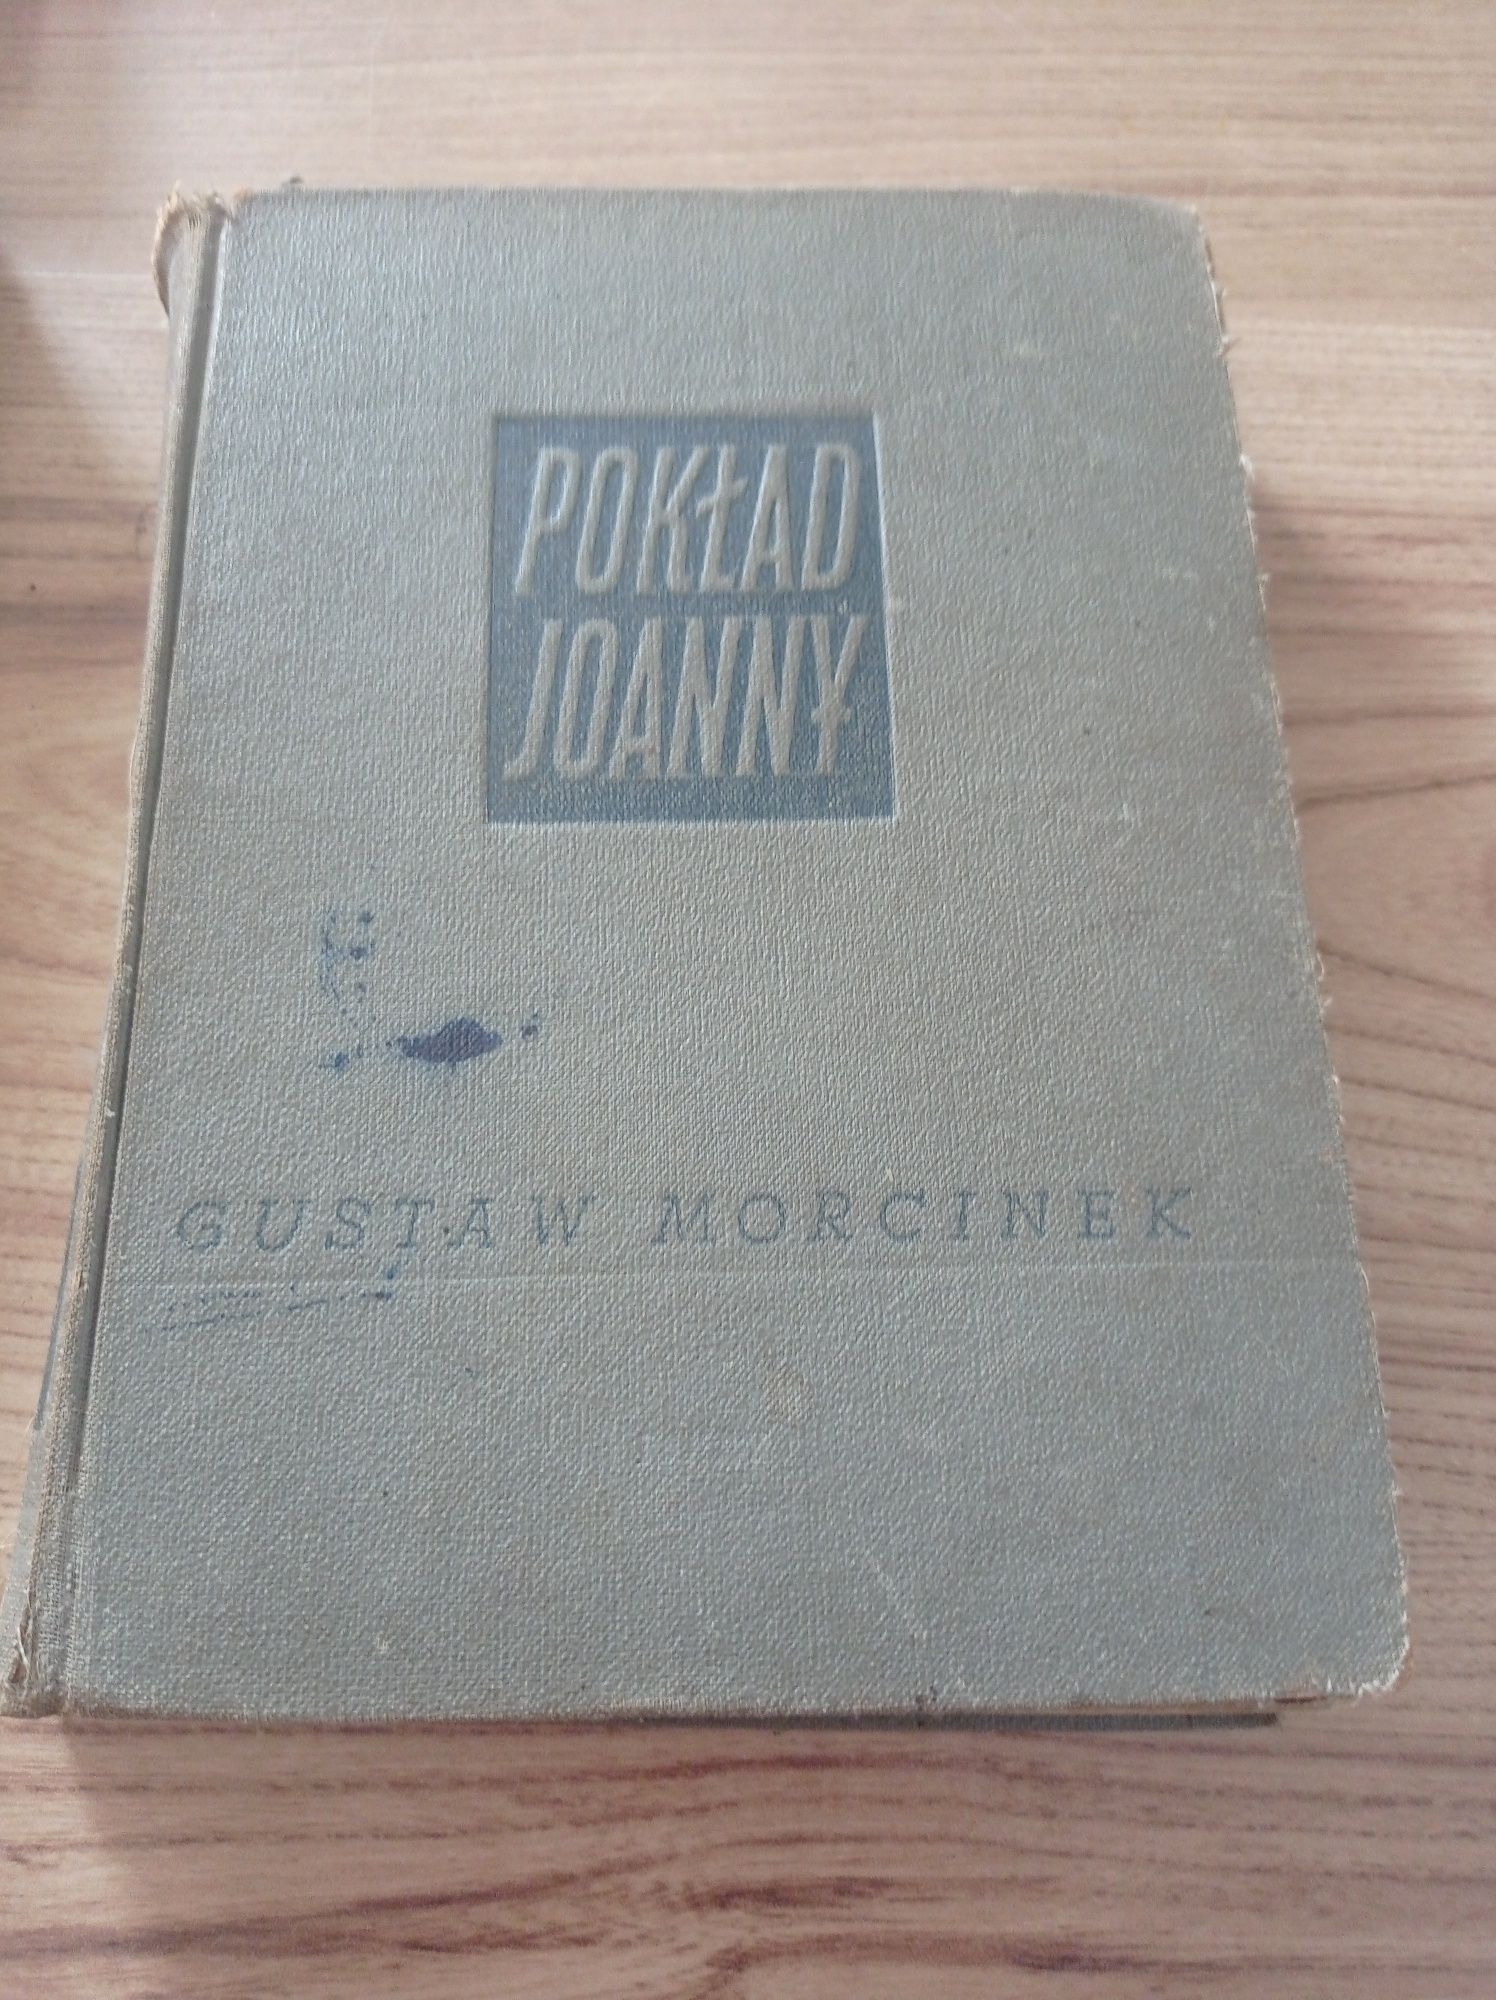 Pokład Joanny Gustaw Morcinek